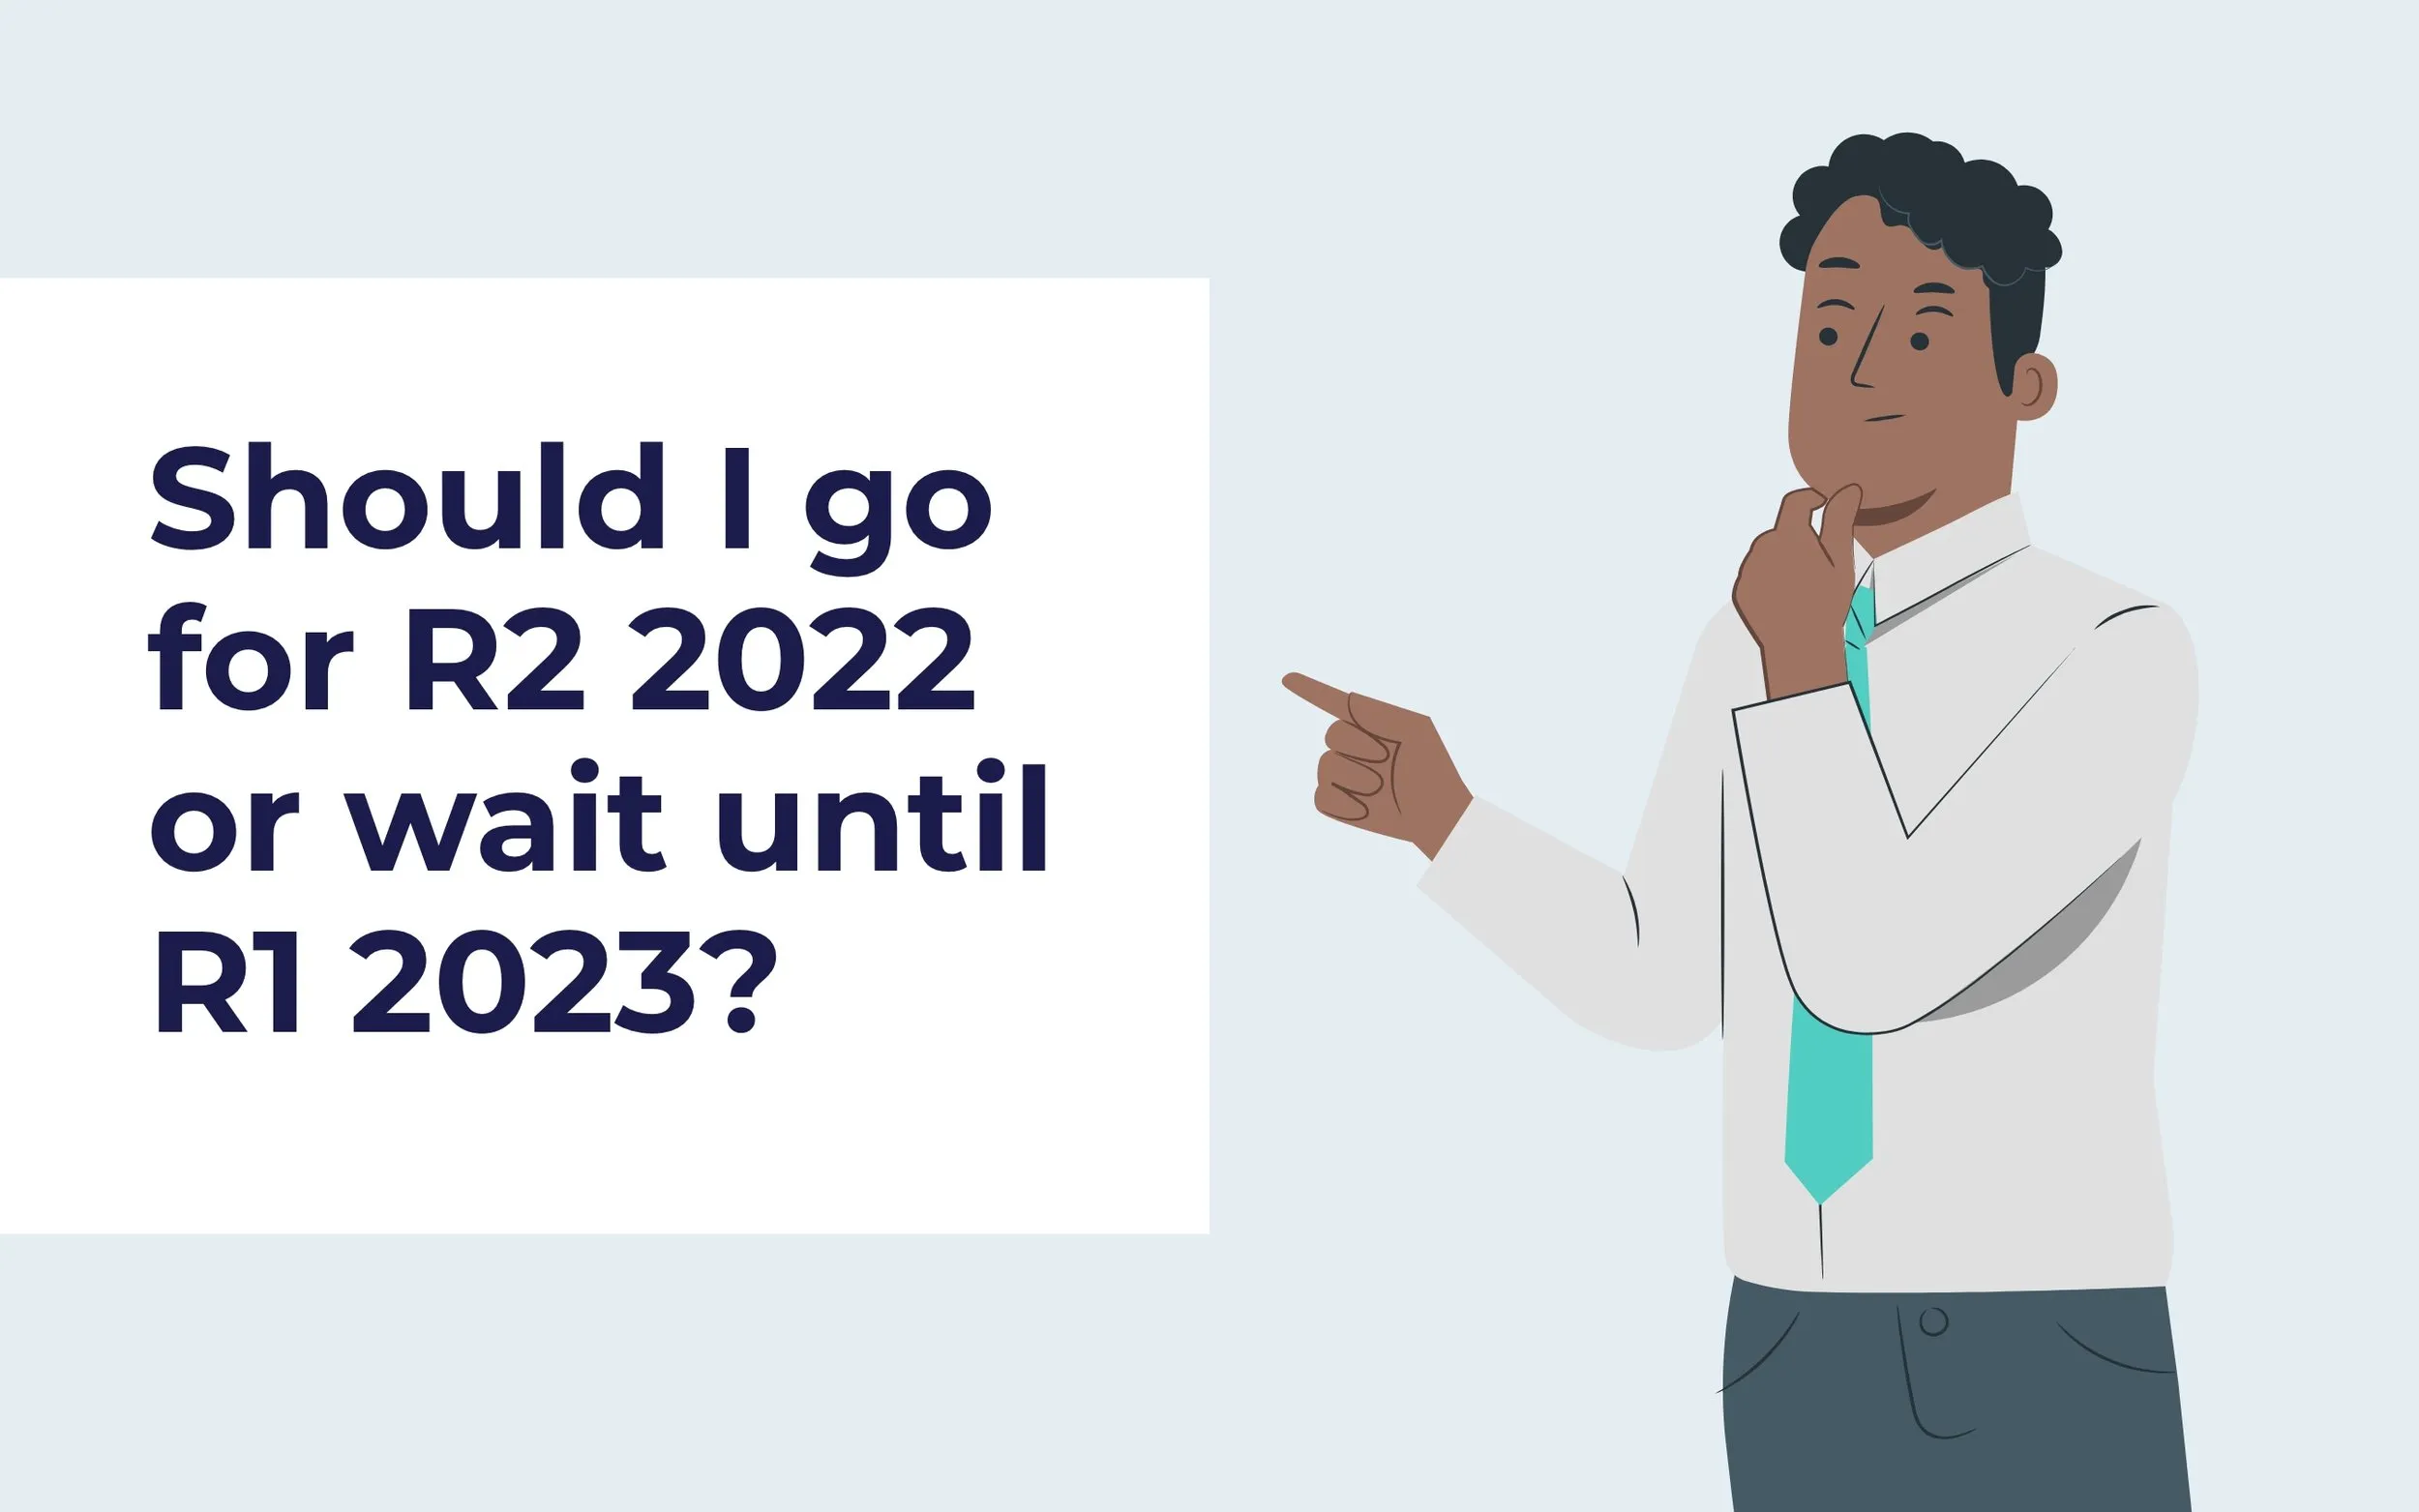 Should I go for R2 2022 or wait until R1 2023?